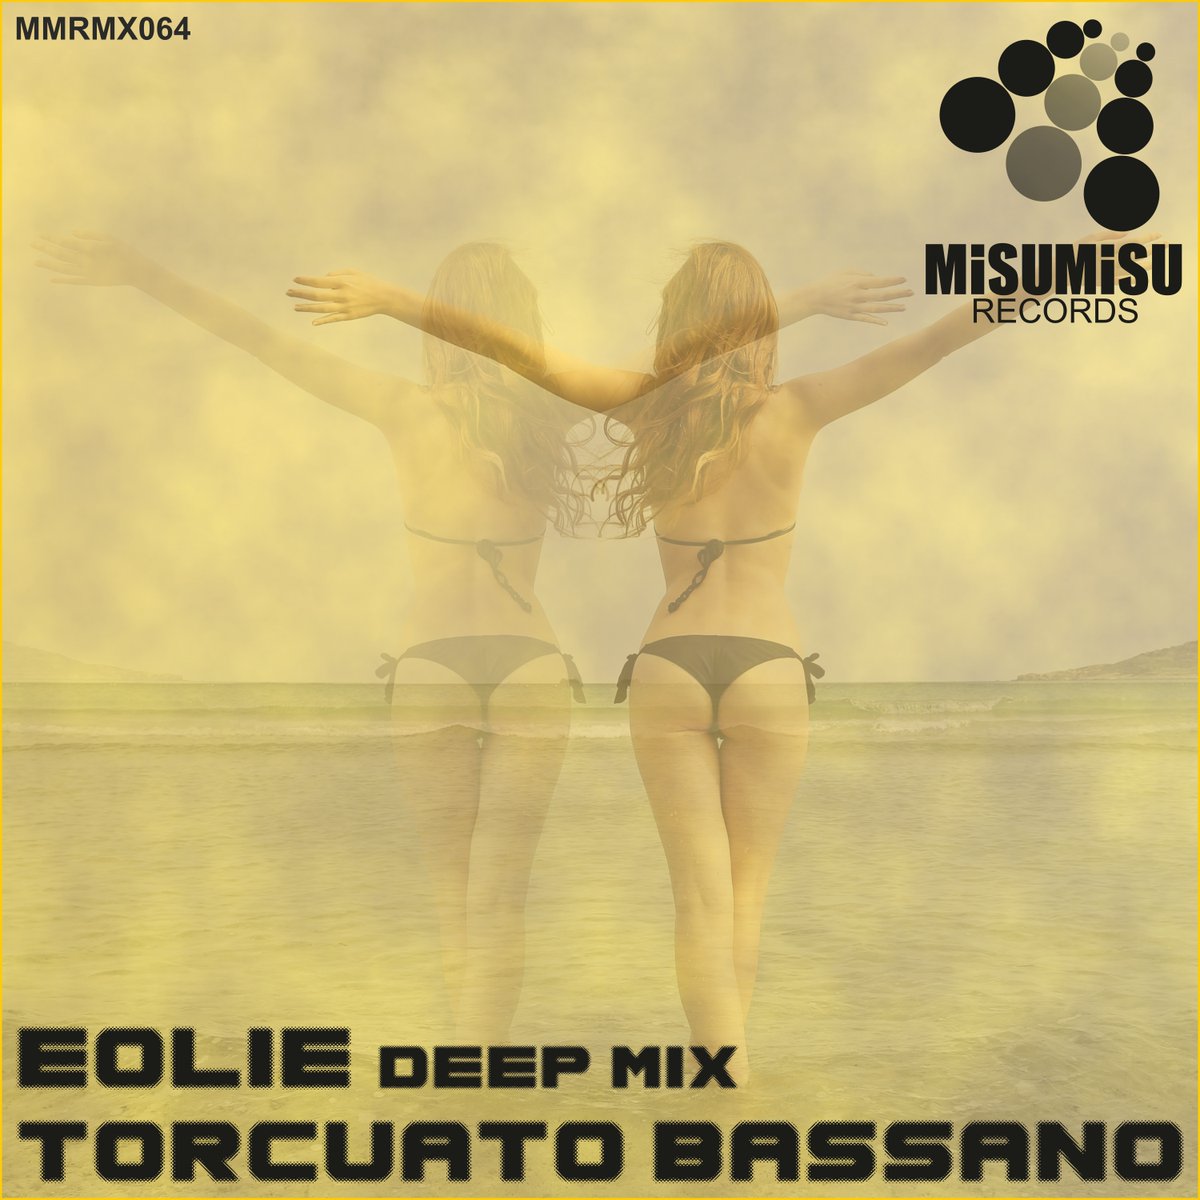 #torcuatobassano #eolie #mix #mixcloud #digitalcover #cuartaraartdesign #misumisurecords #label #records